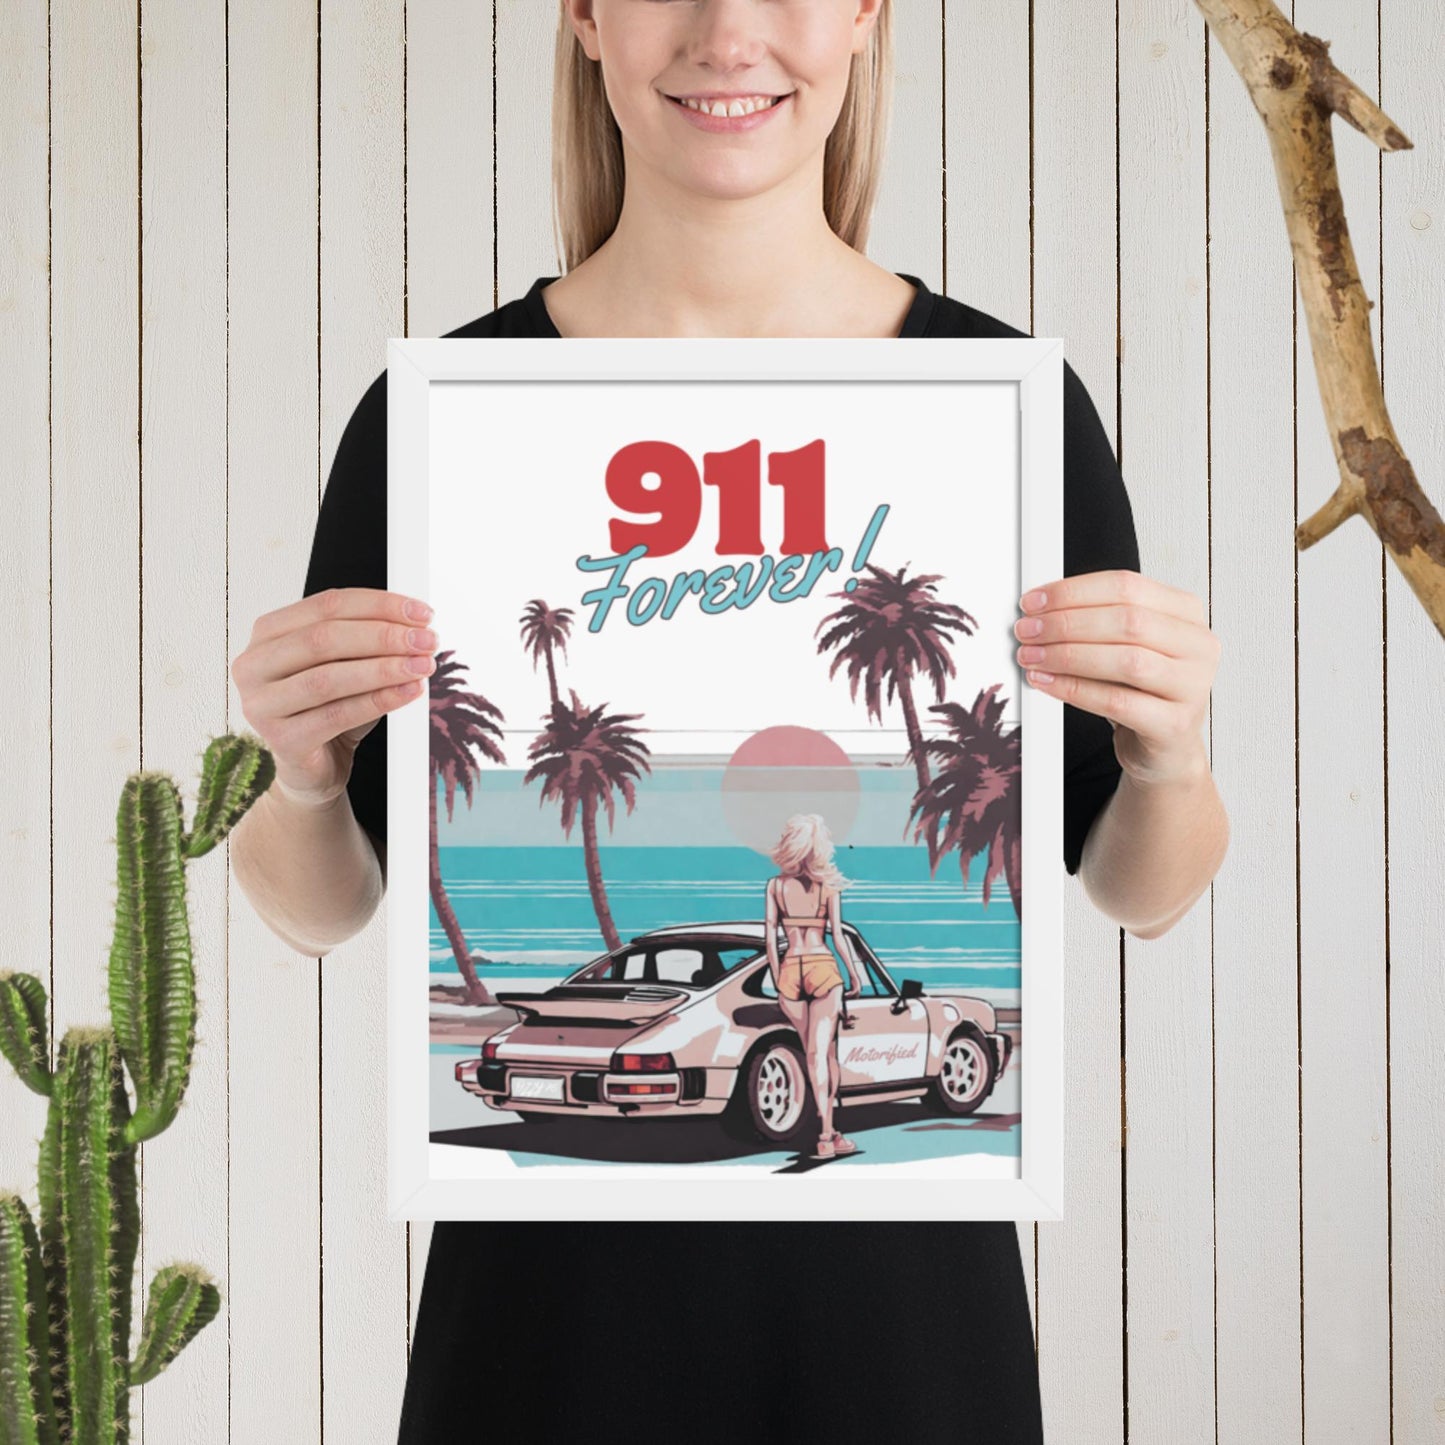 Porsche 911 Forever Framed Poster